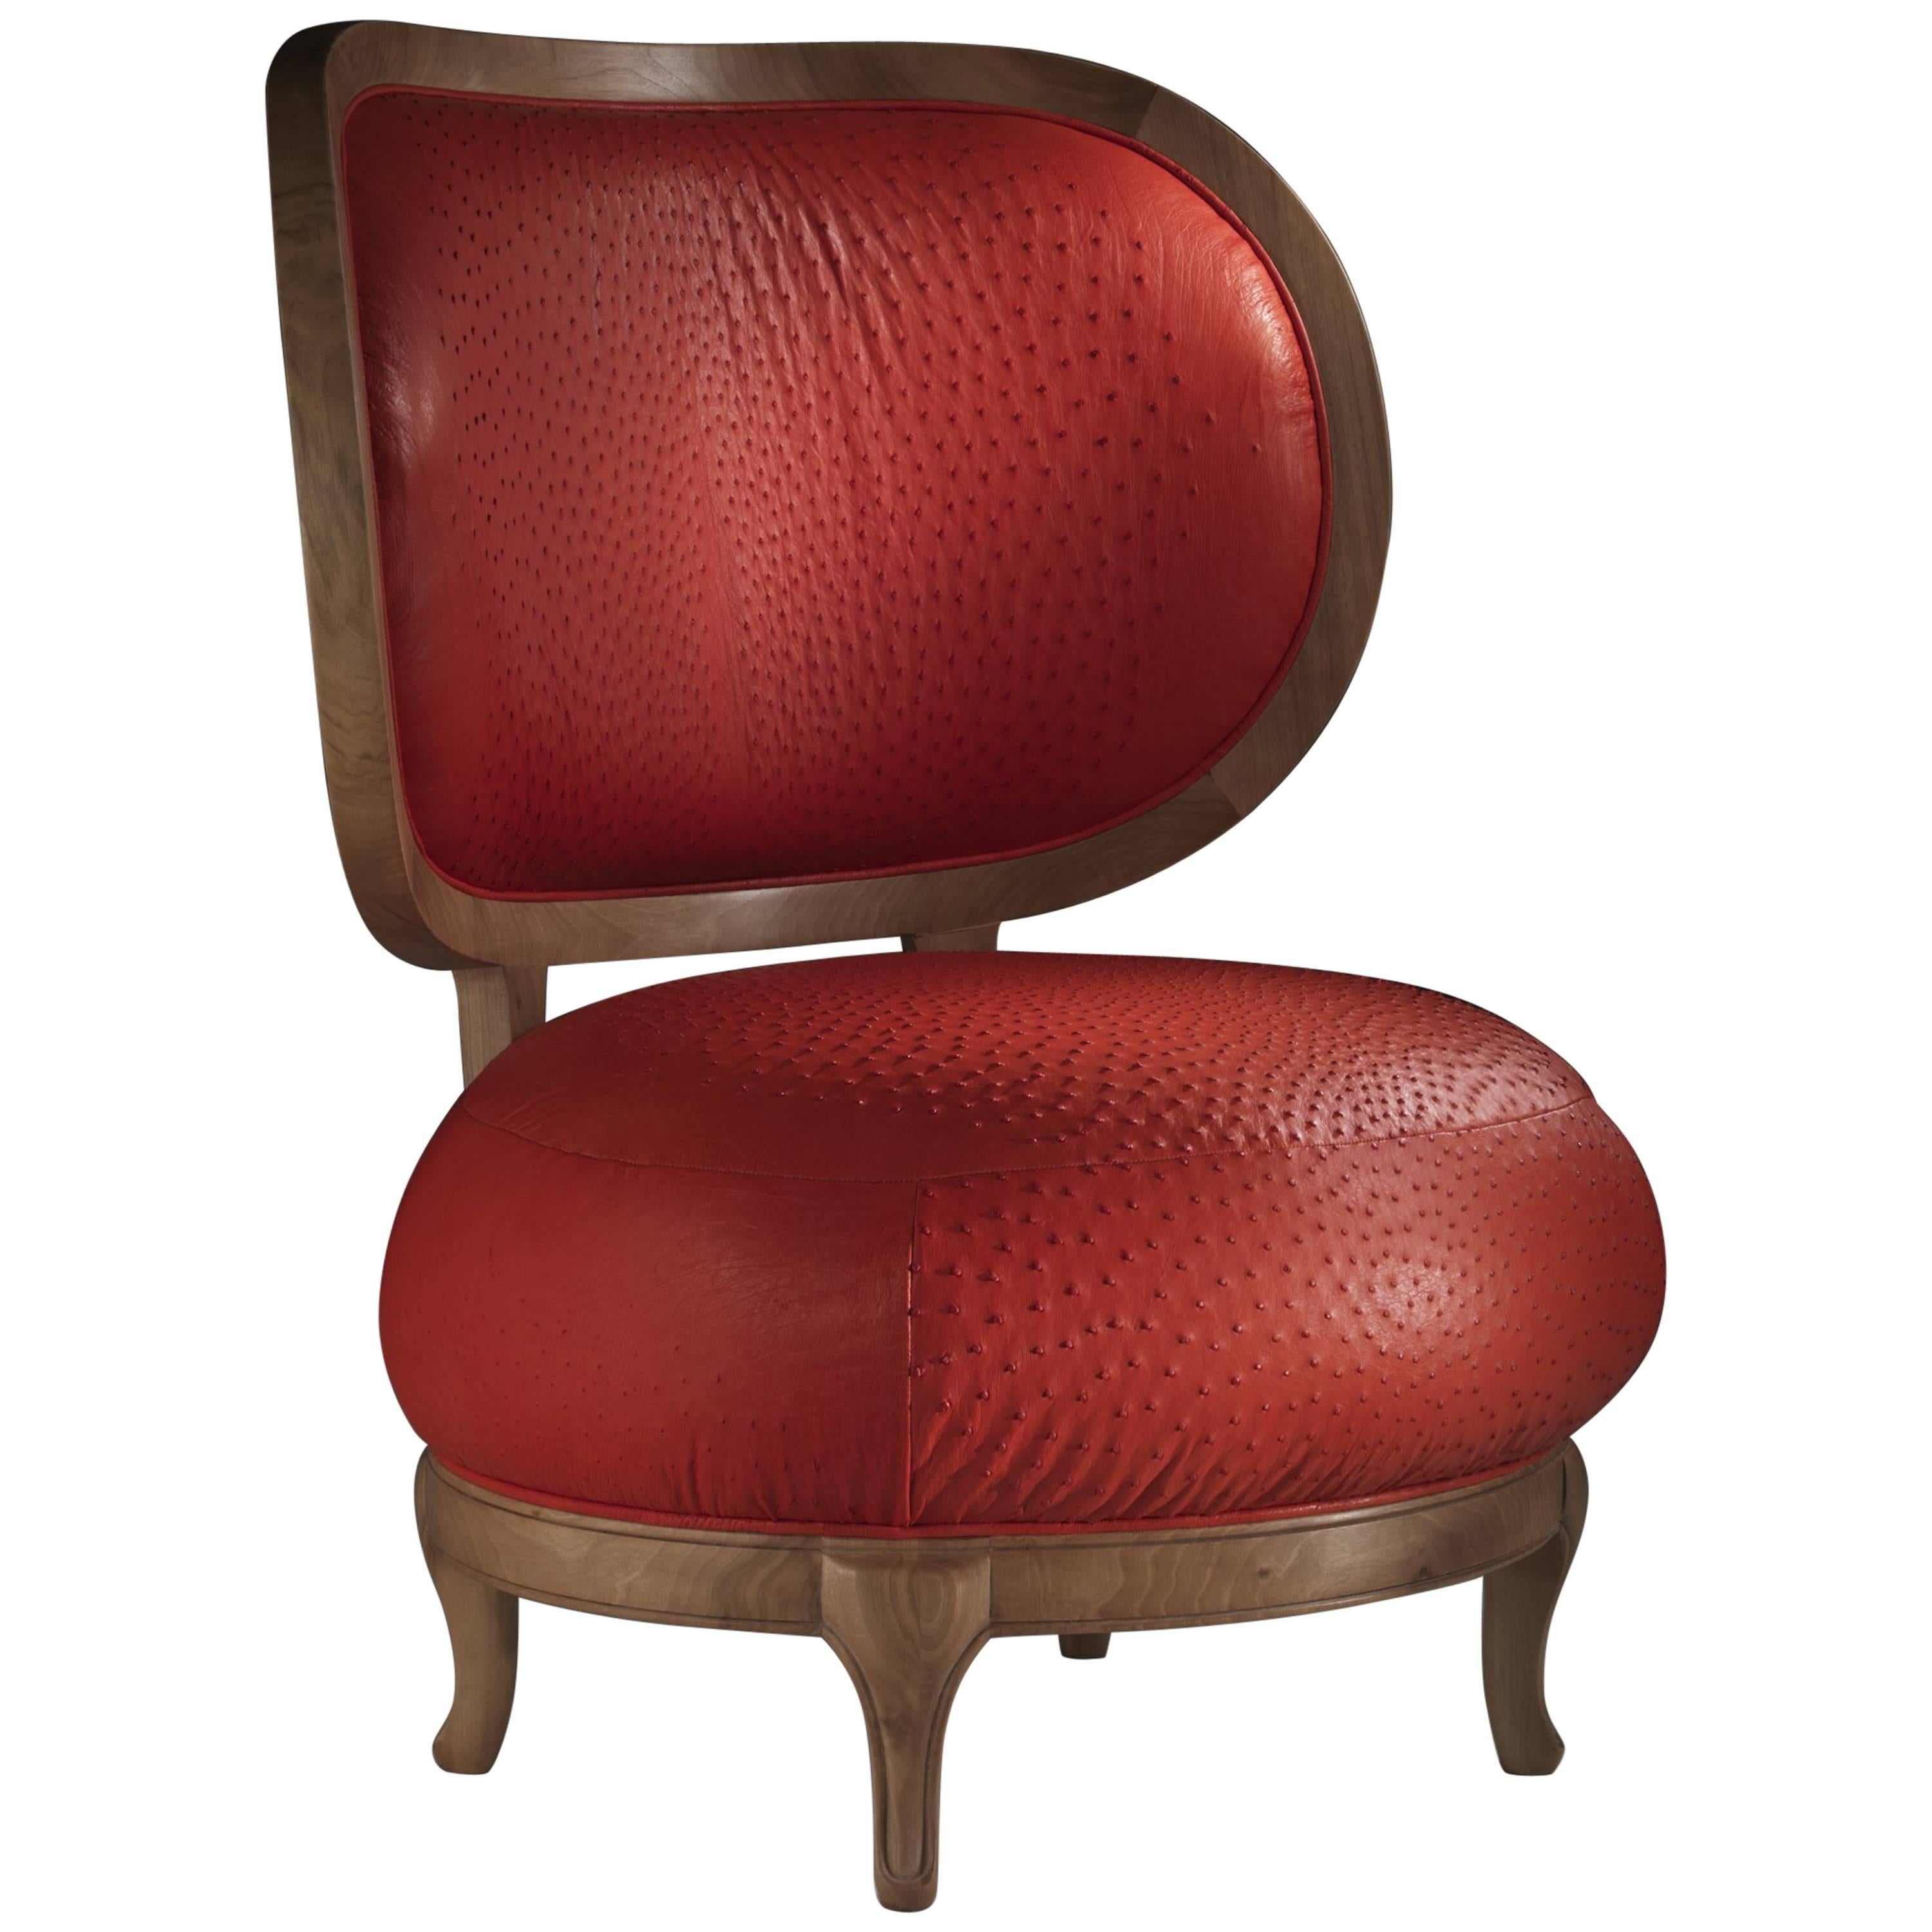 Struzza - Sessel aus Straußenleder, entworfen von Nigel Coates